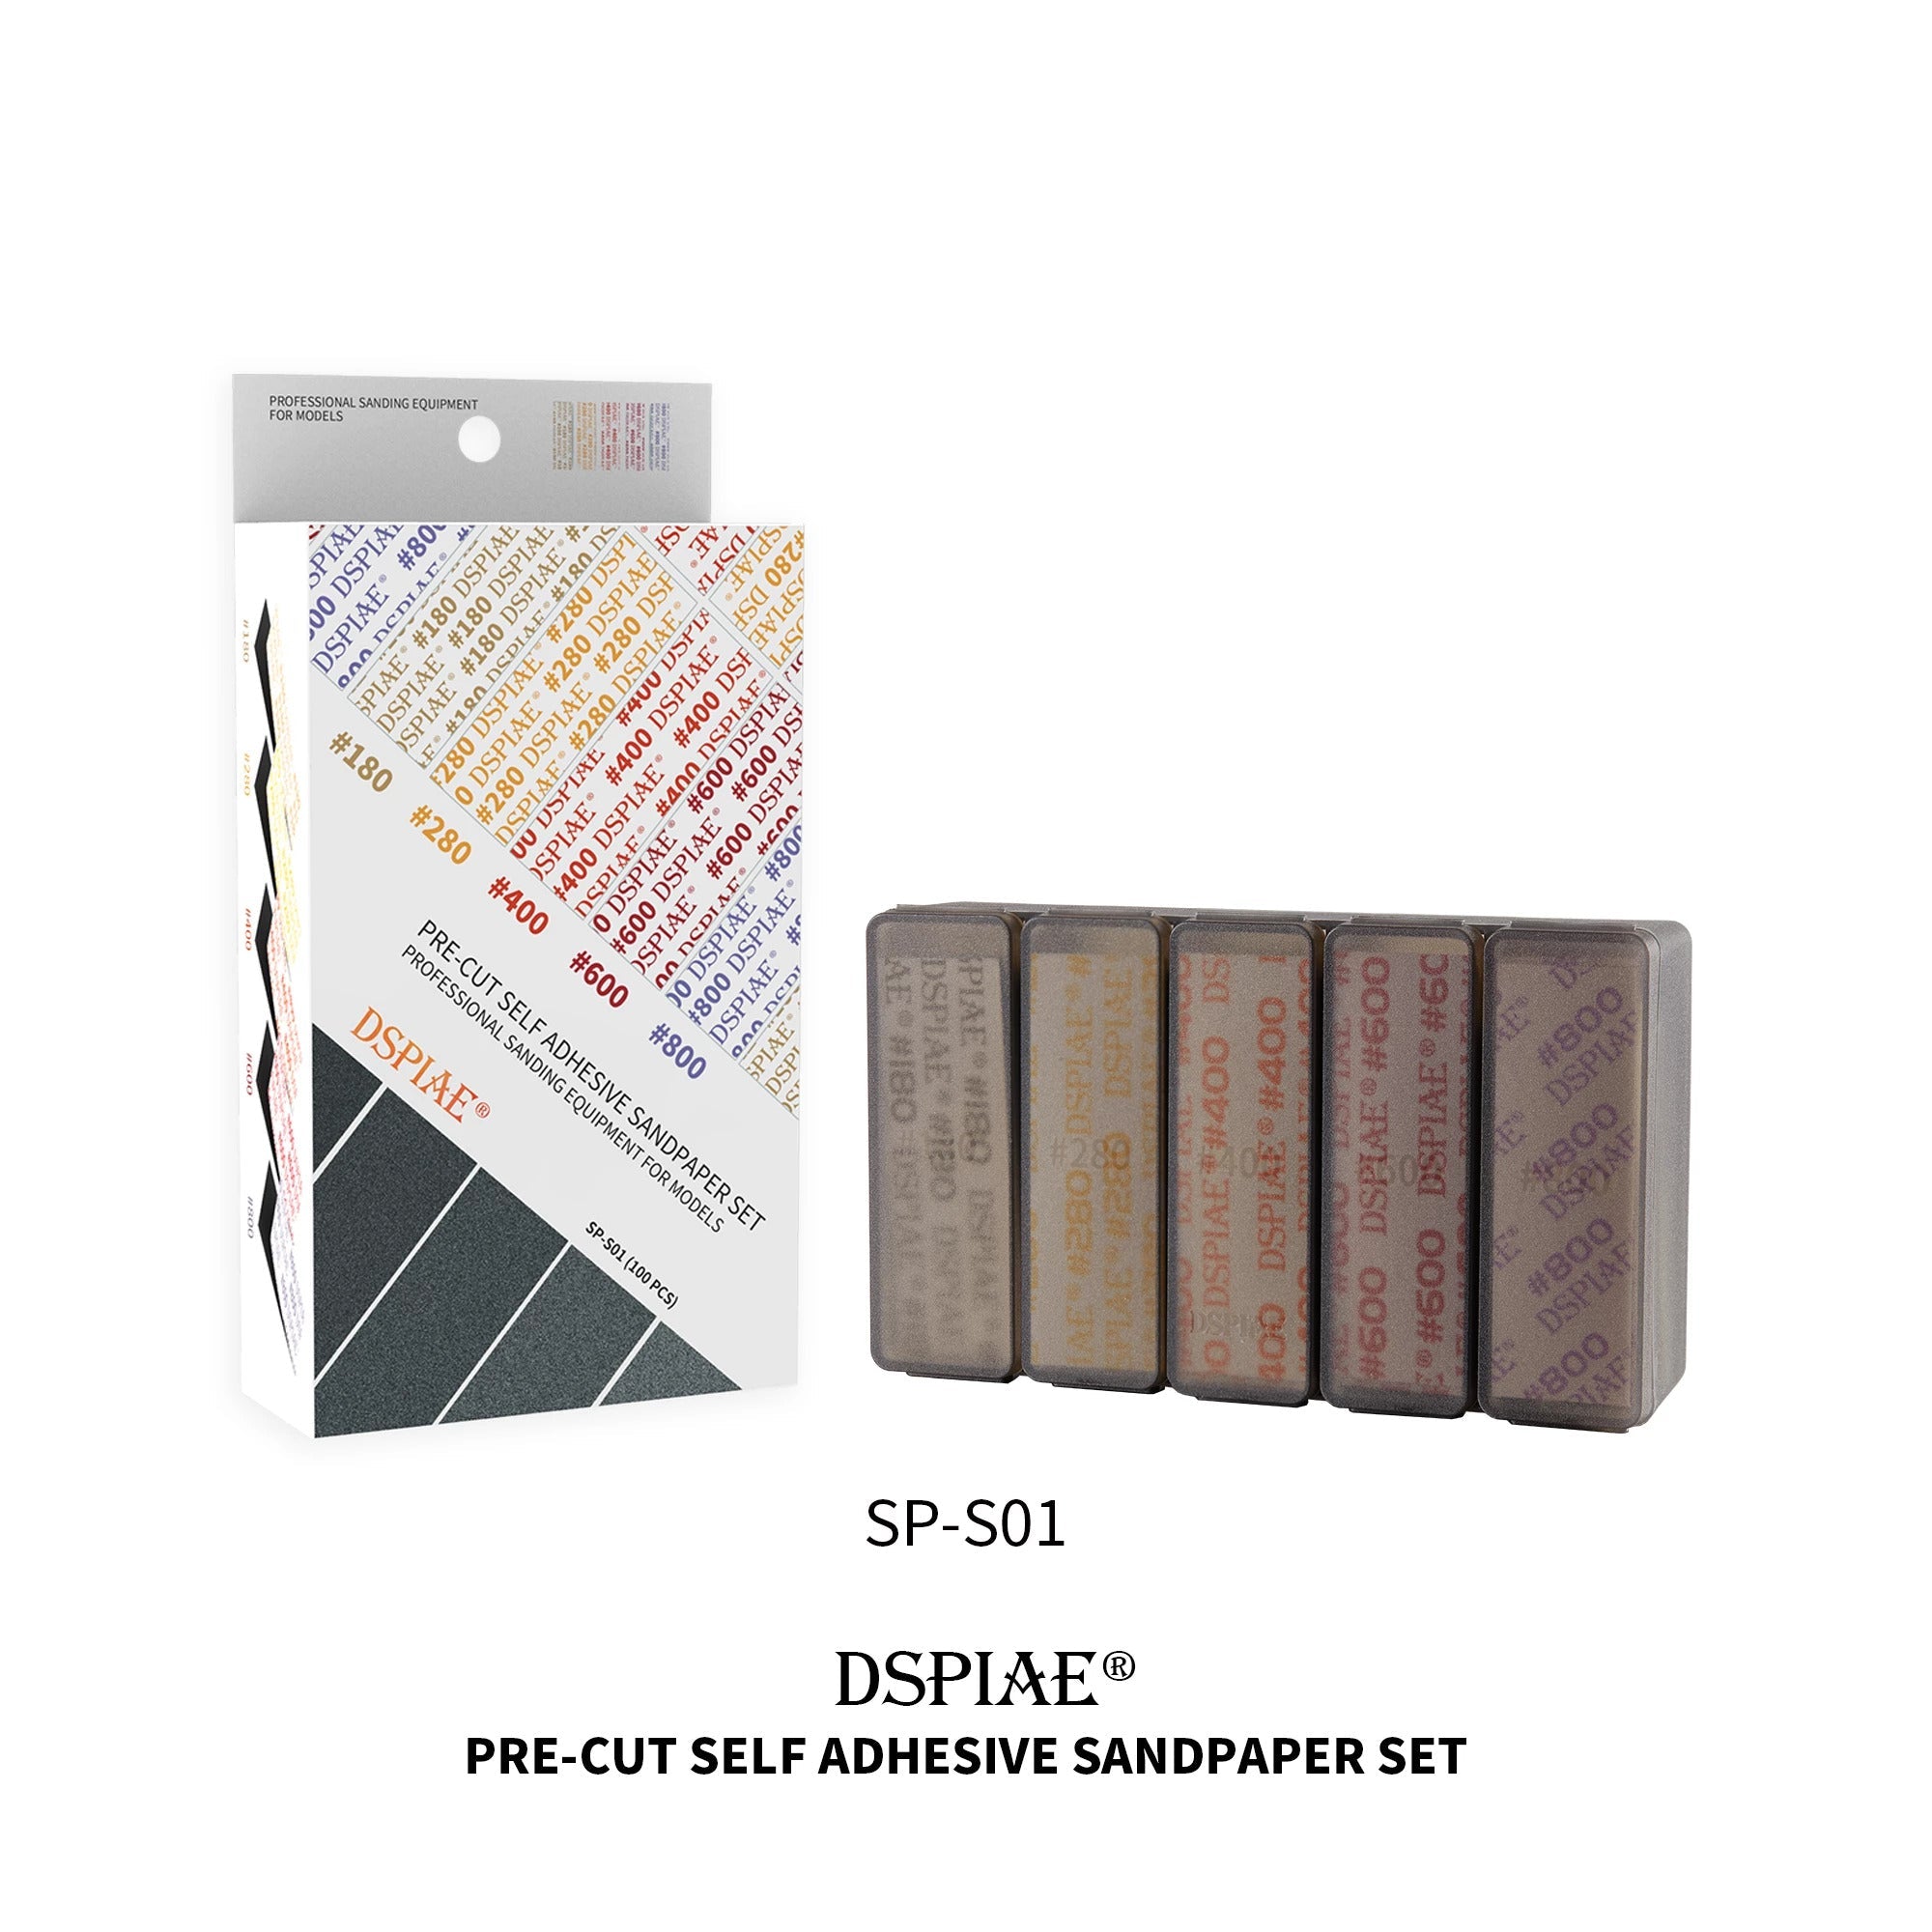 DSPIAE: SP-S01 Adhesive Sandpaper Set (100pc) 180-800